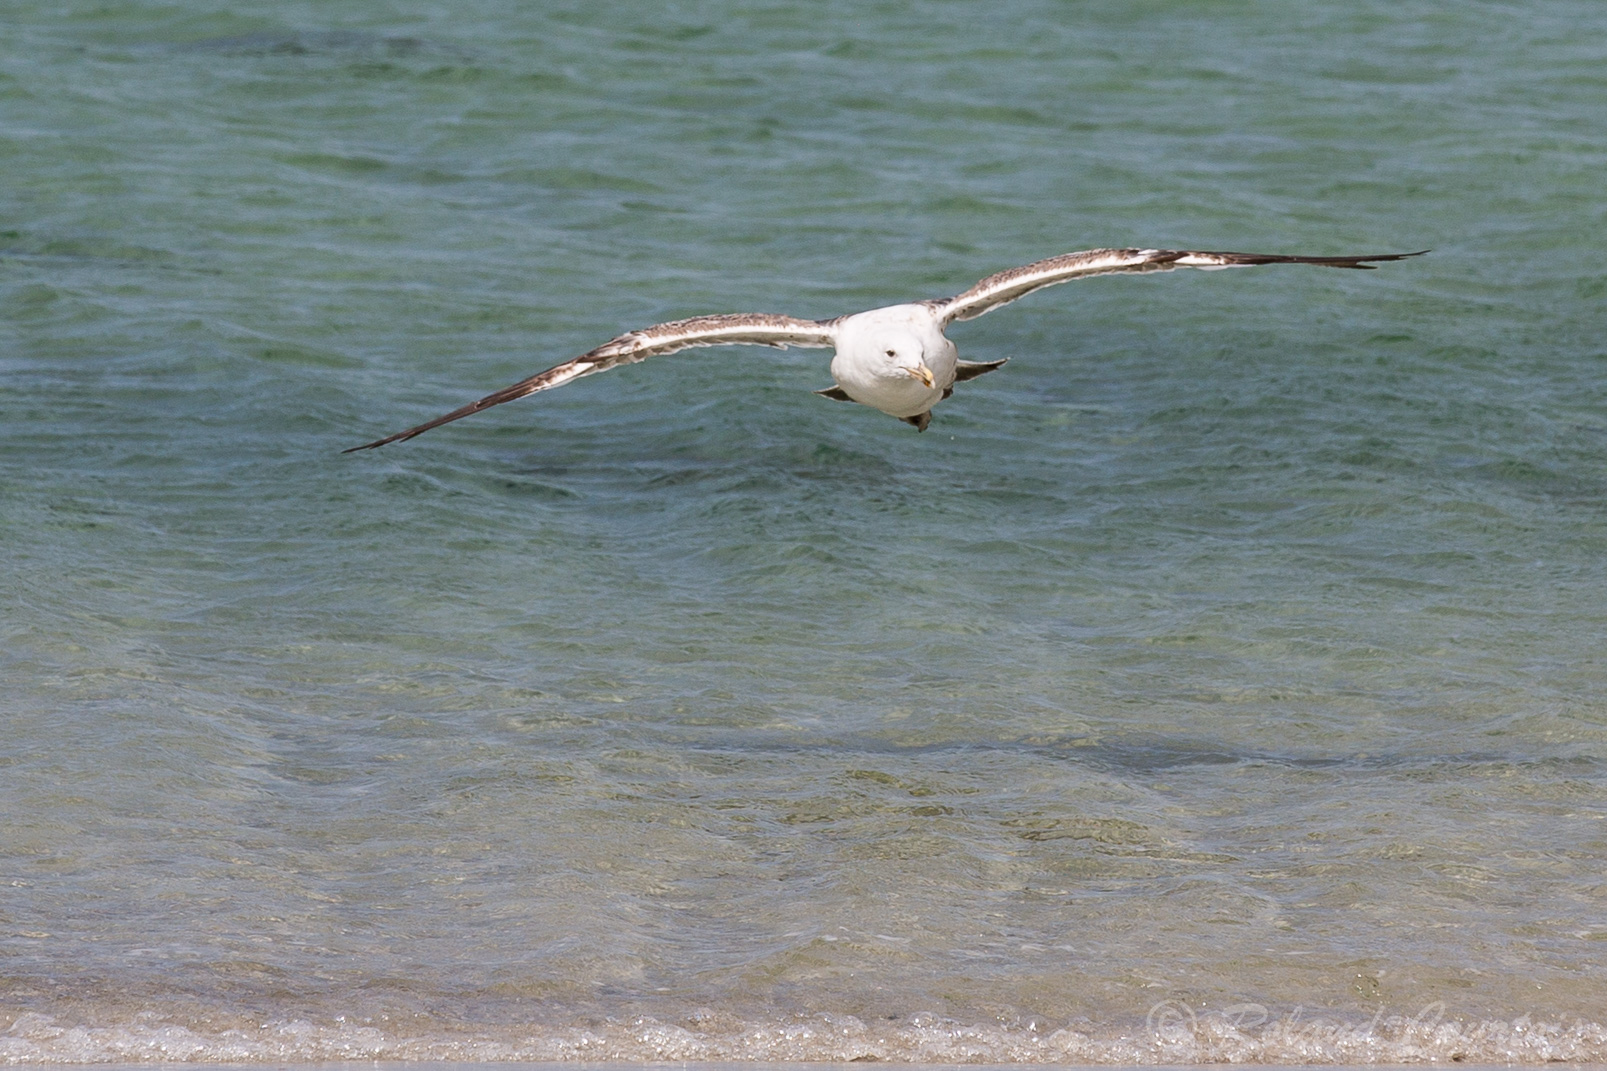 L'Albatros hurleur a la plus grande envergure de tous les oiseaux, avec une moyenne de 3,10 m.